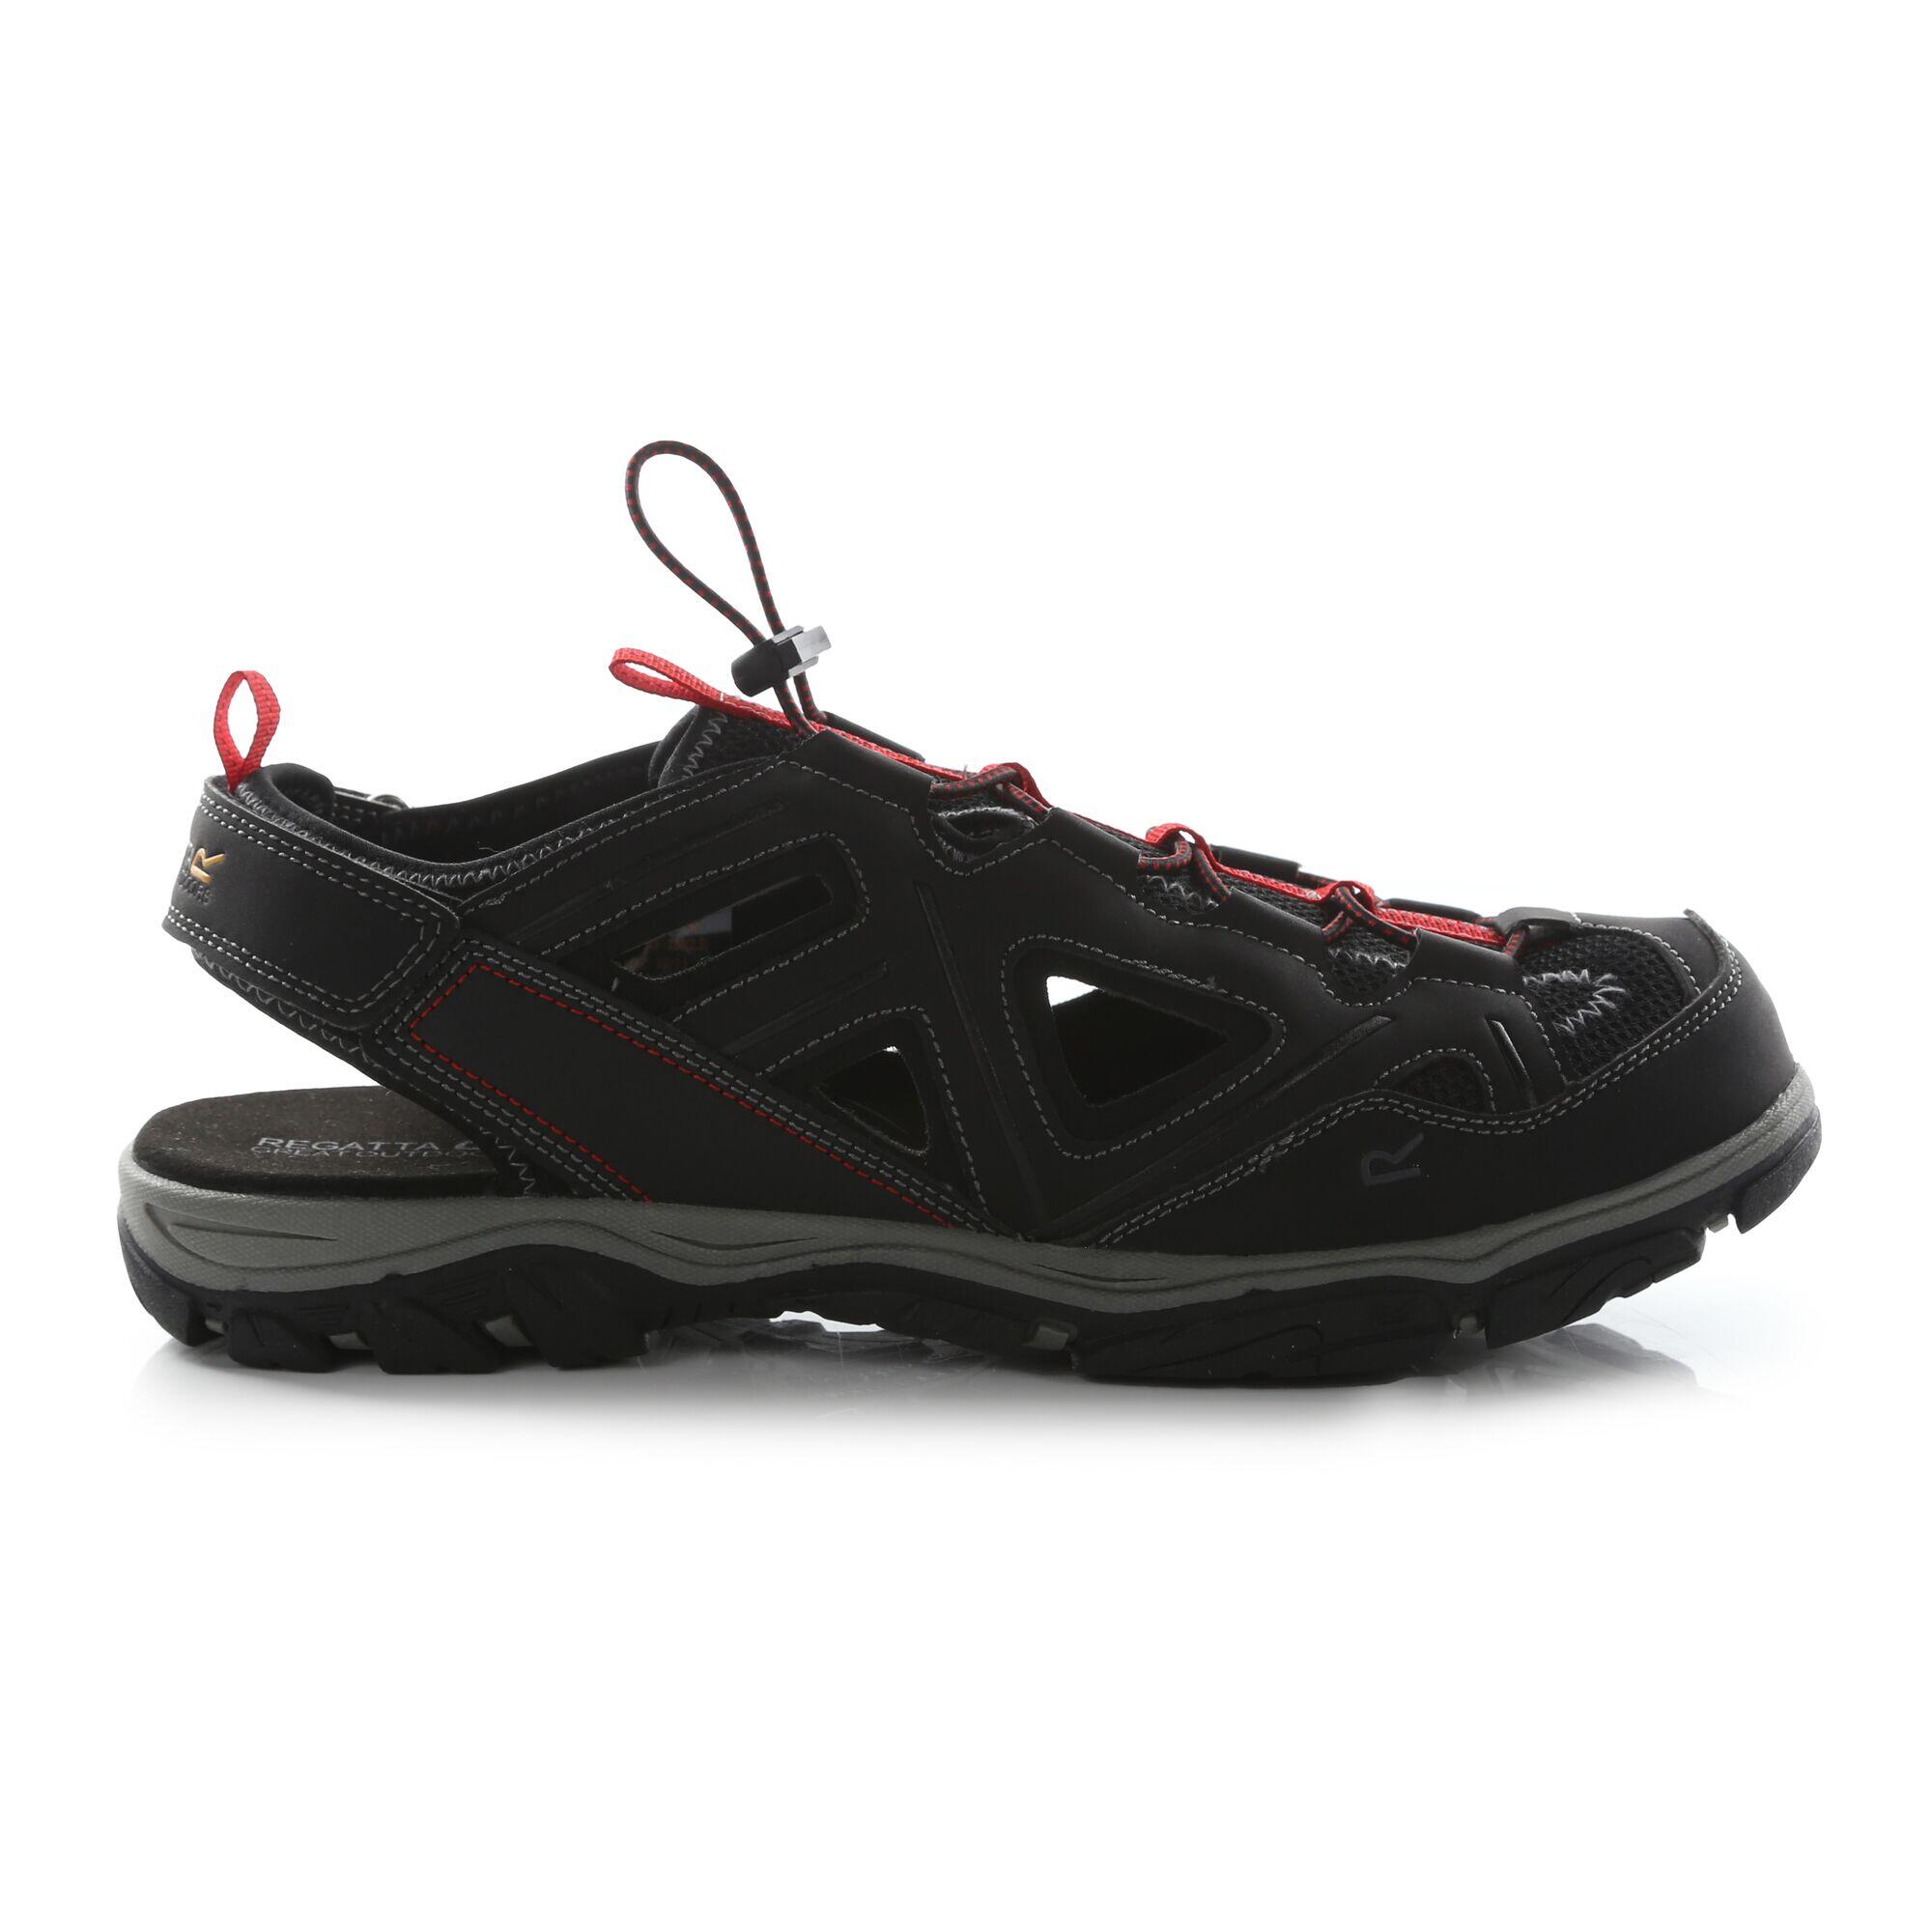 REGATTA Westshore 3 Men's Hiking Sandals - Black / Red